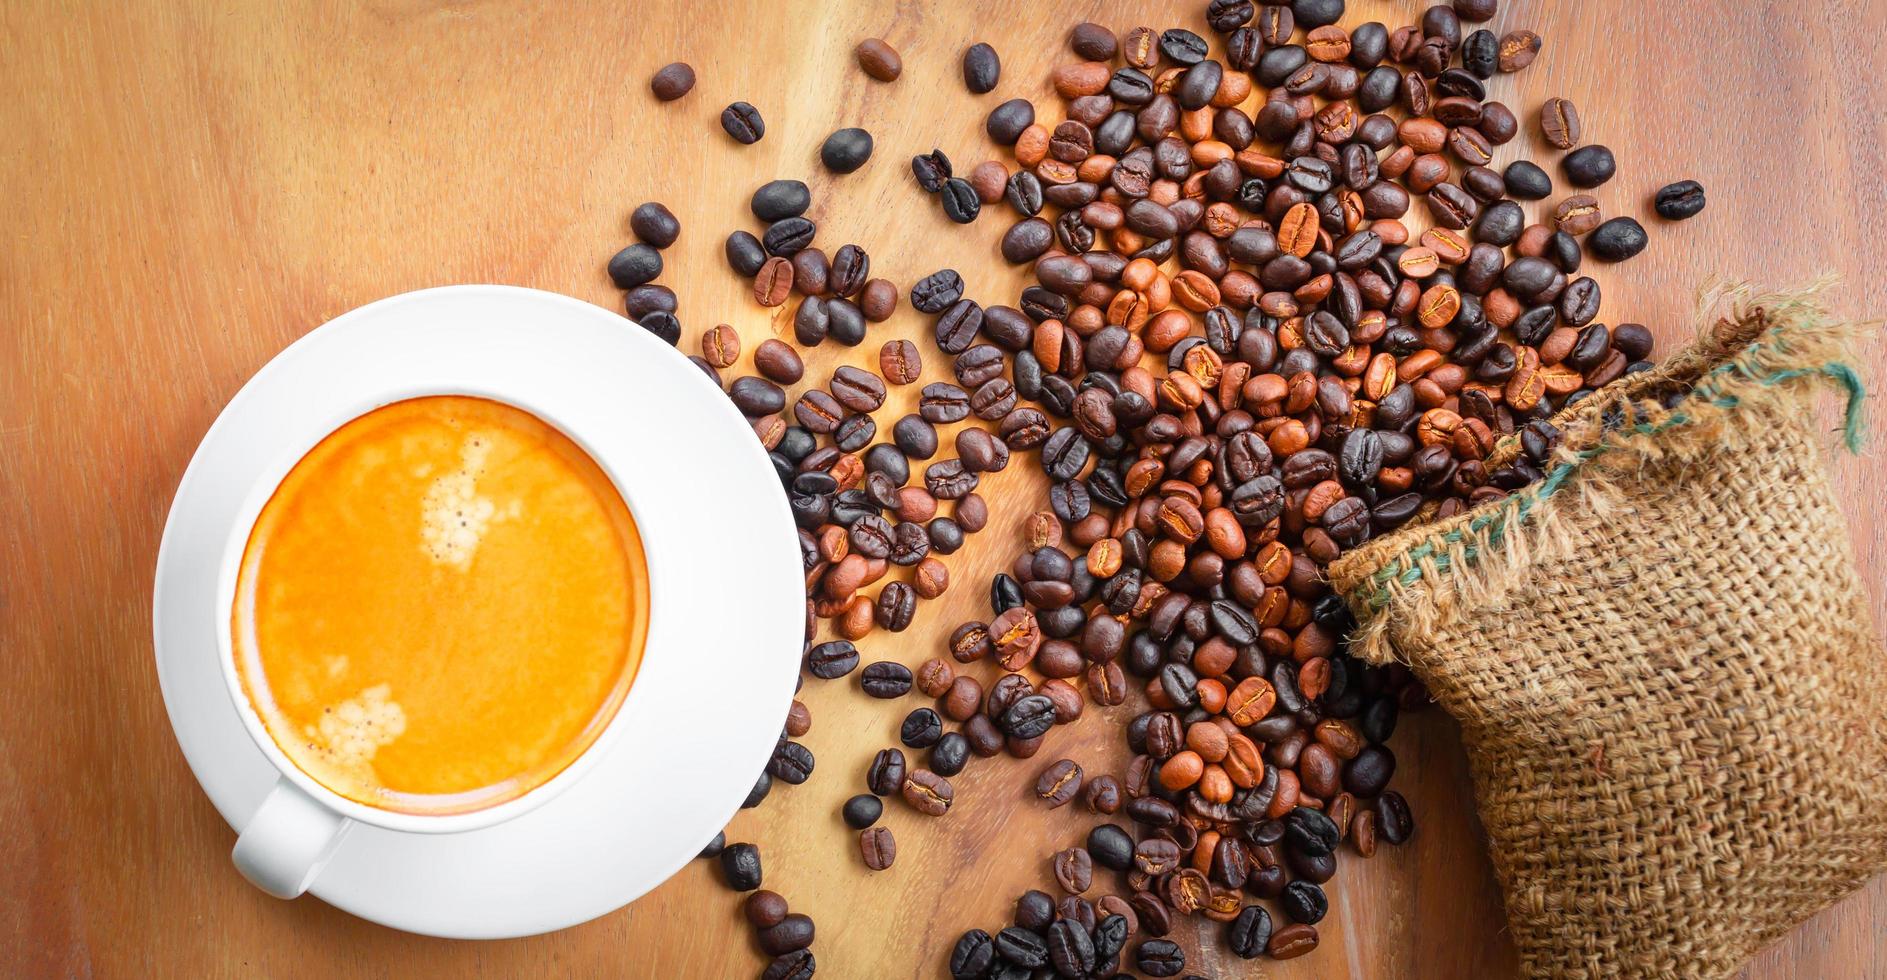 vue de dessus de la tasse de café a de la mousse dorée et des grains de café mélangés ou mélangés dans un sac brun sur un fond en bois photo